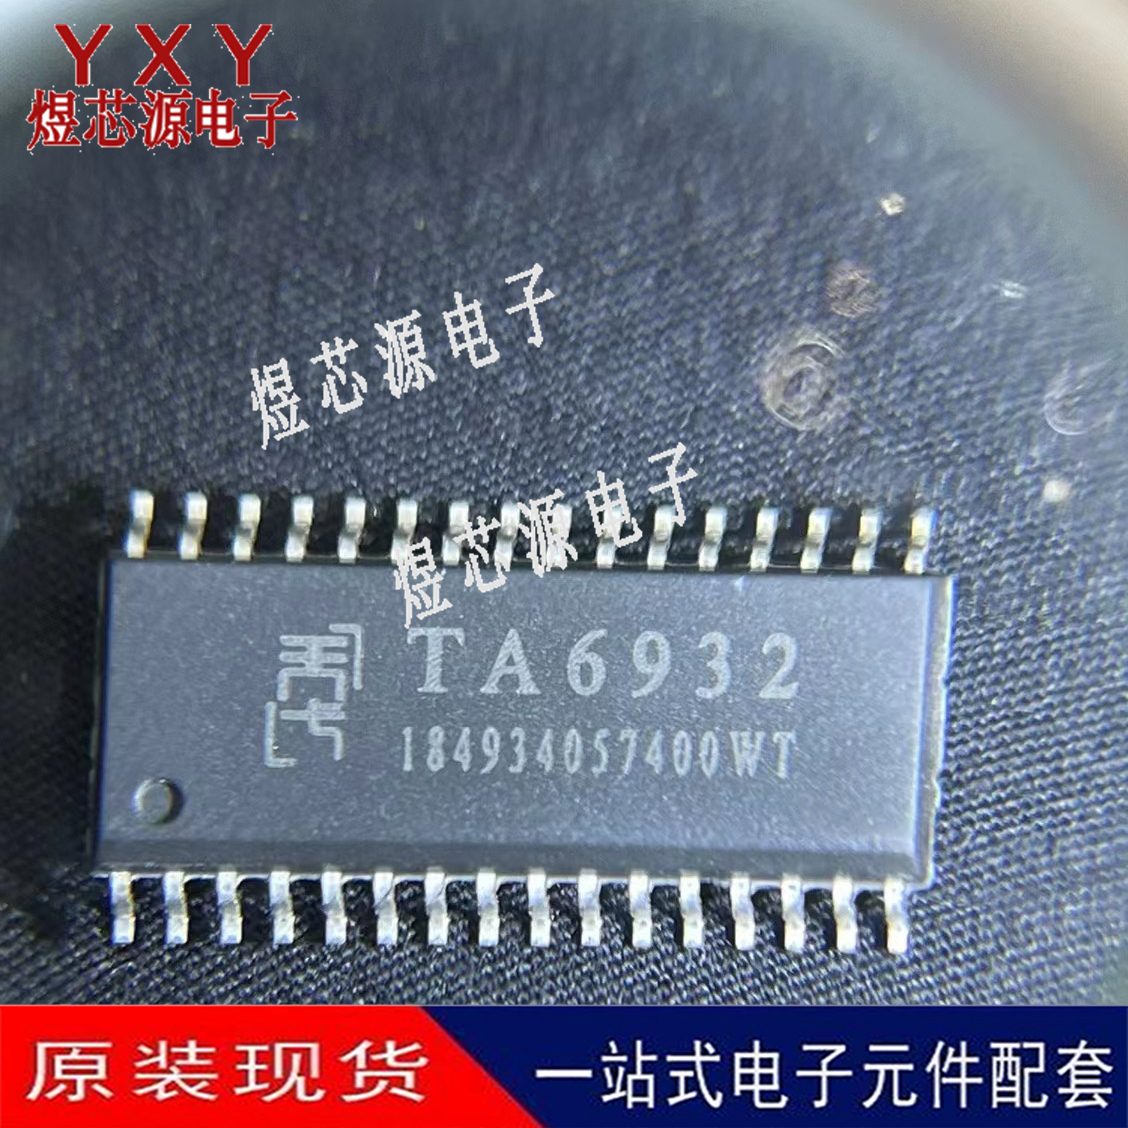 全新 TA6932 LED数码管驱动芯片 贴片SOP-32 SPI通讯芯片